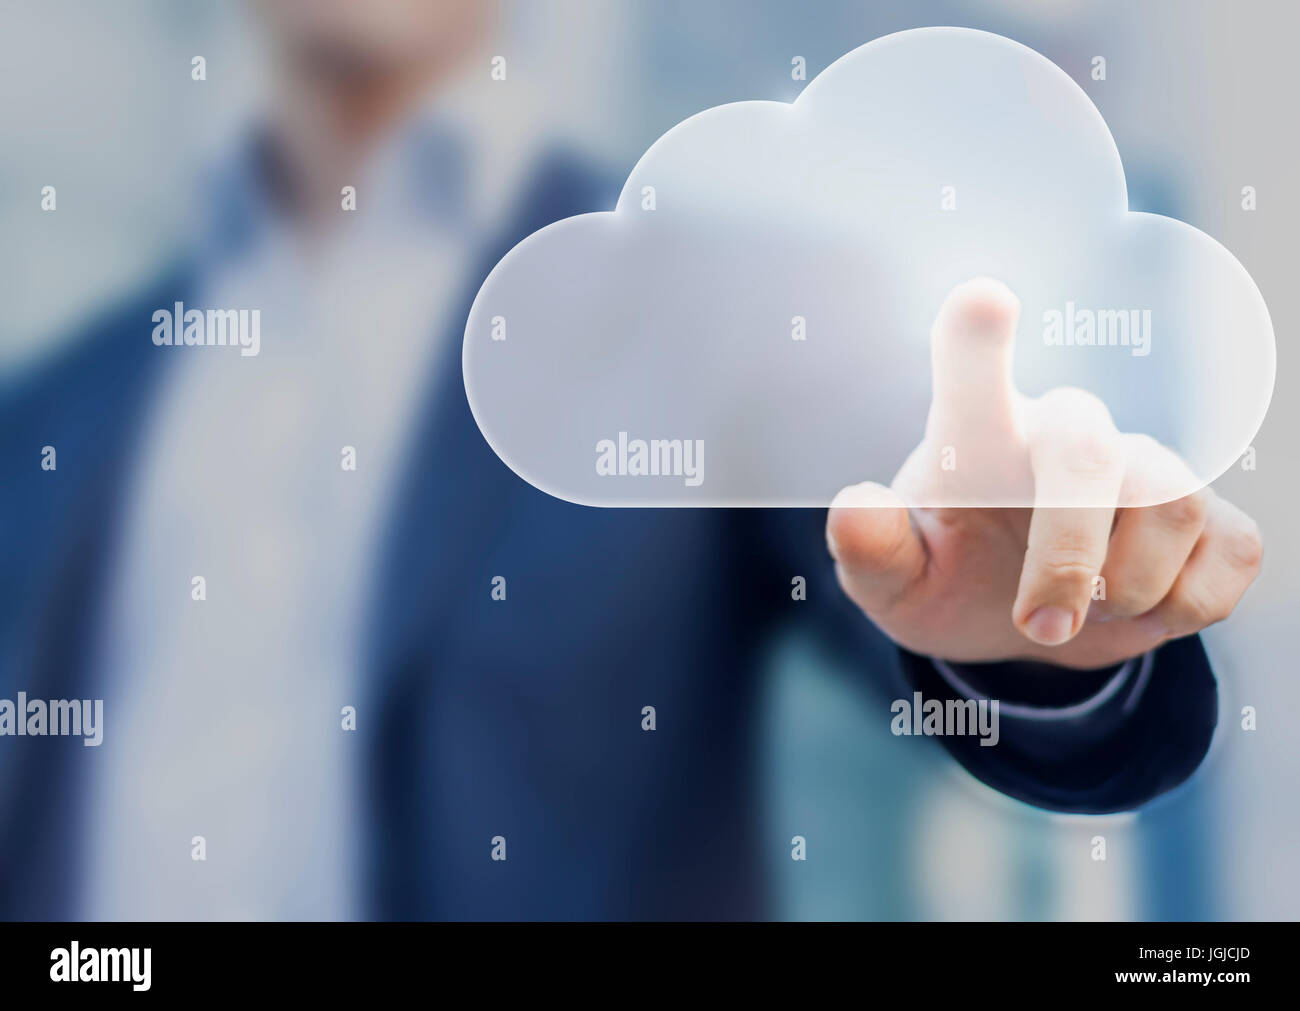 Cloud computing concept avec une personne touchant une icône numérique virtuelle Banque D'Images